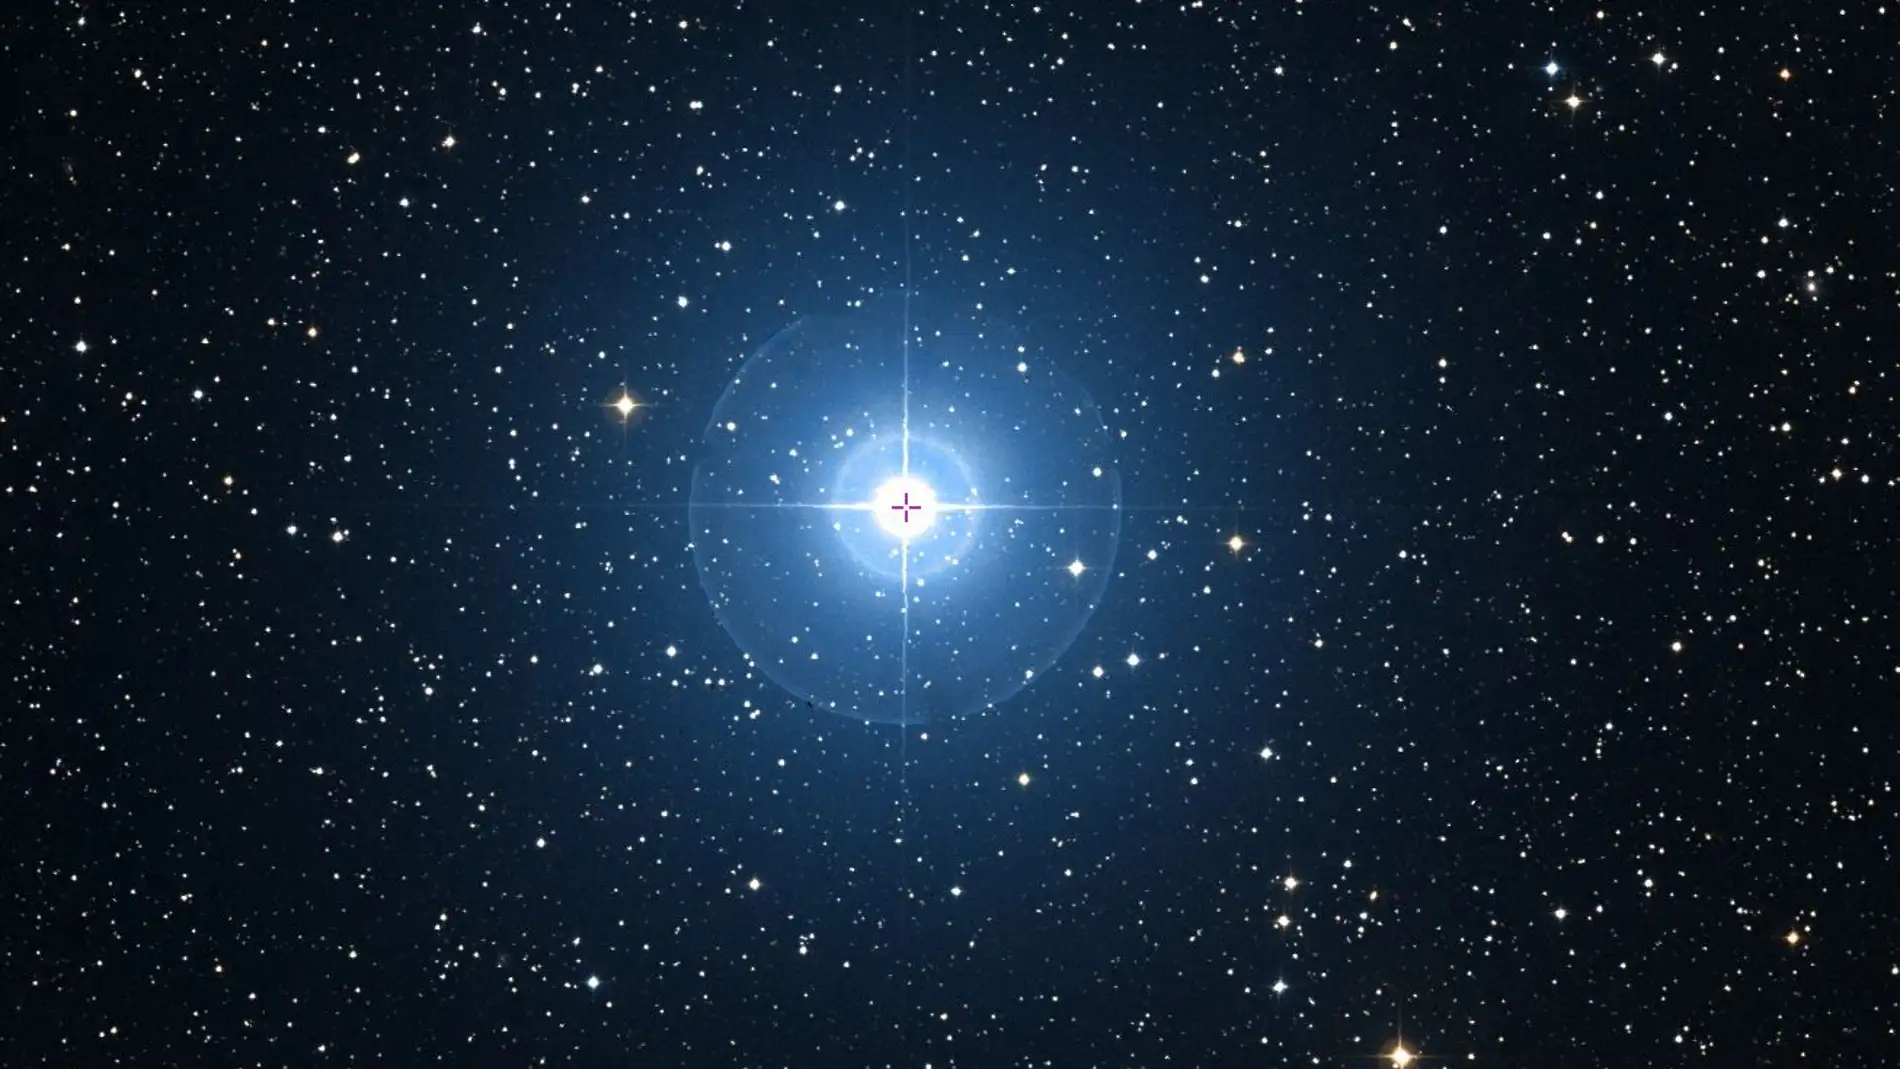  Lambda Geminorum obtenida con el catálogo estelar de ESASky